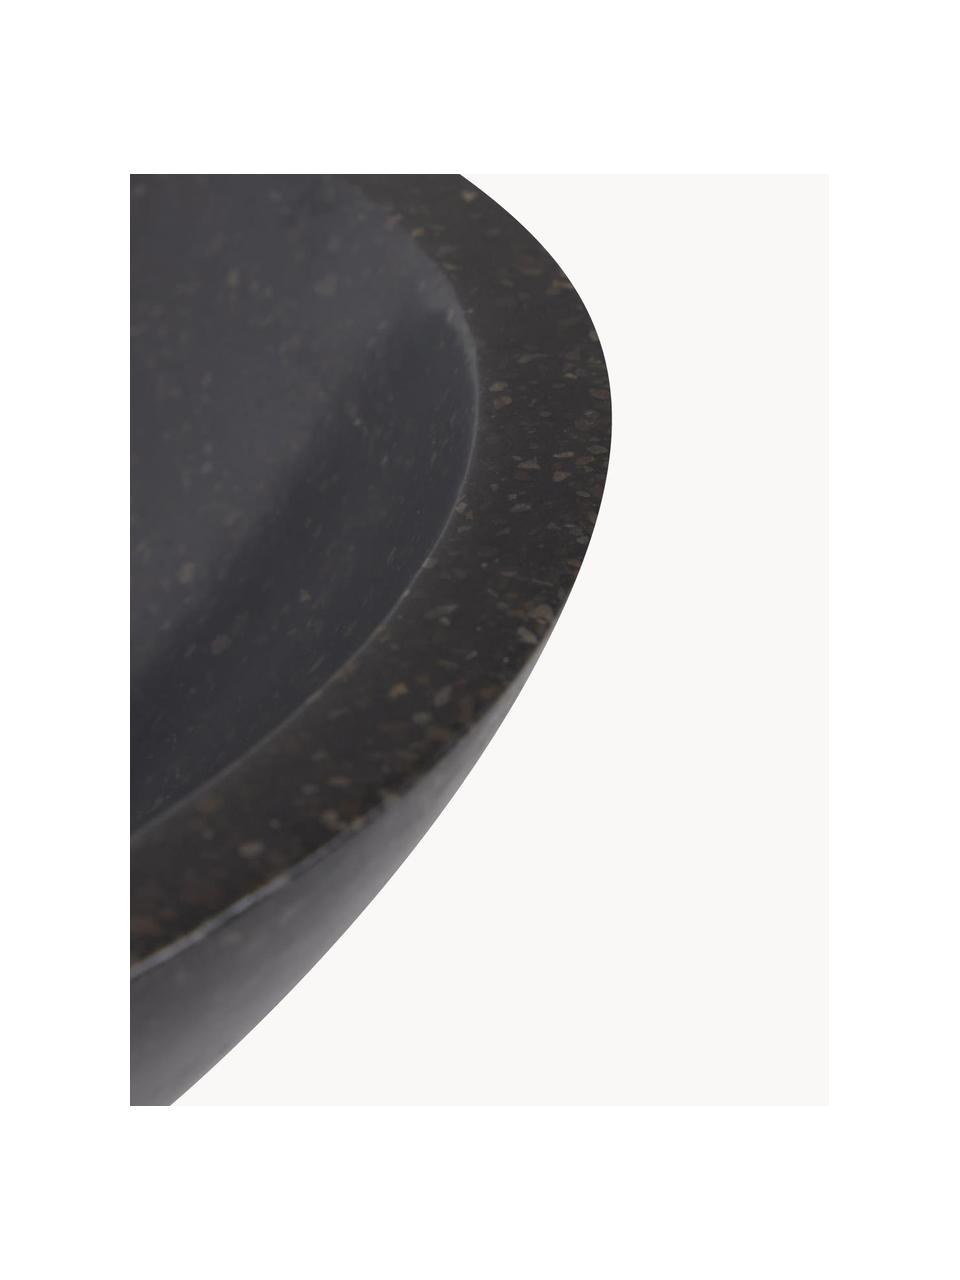 Umywalka nablatowa z lastryko Kuveni, Lastryko, Czarny o wyglądzie lastryko, Ø 40 x W 11 cm